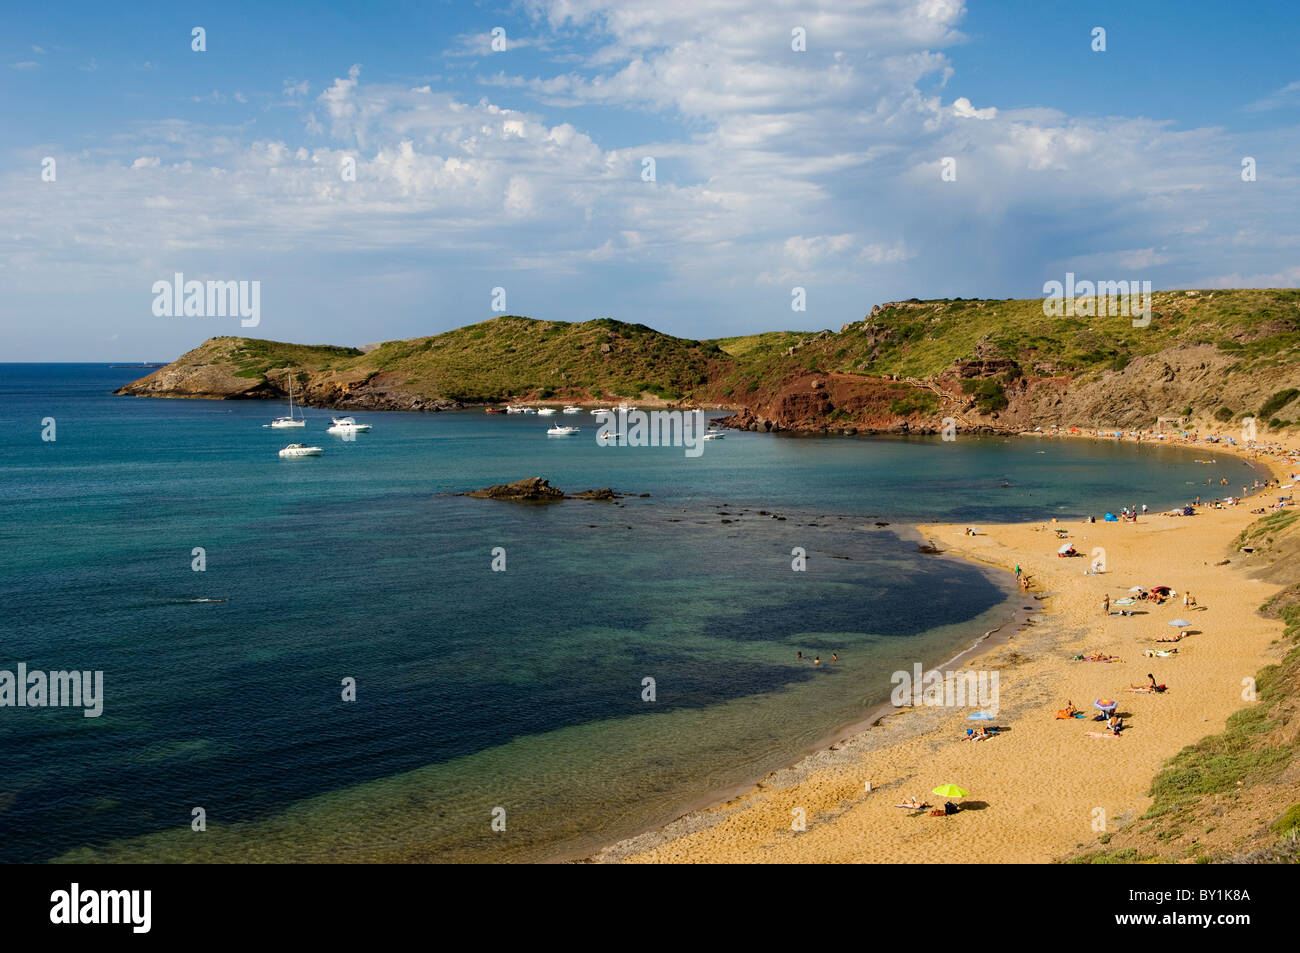 Spain, Menorca. One of Menorca's many wild beaches at Cala Mica Stock Photo  - Alamy